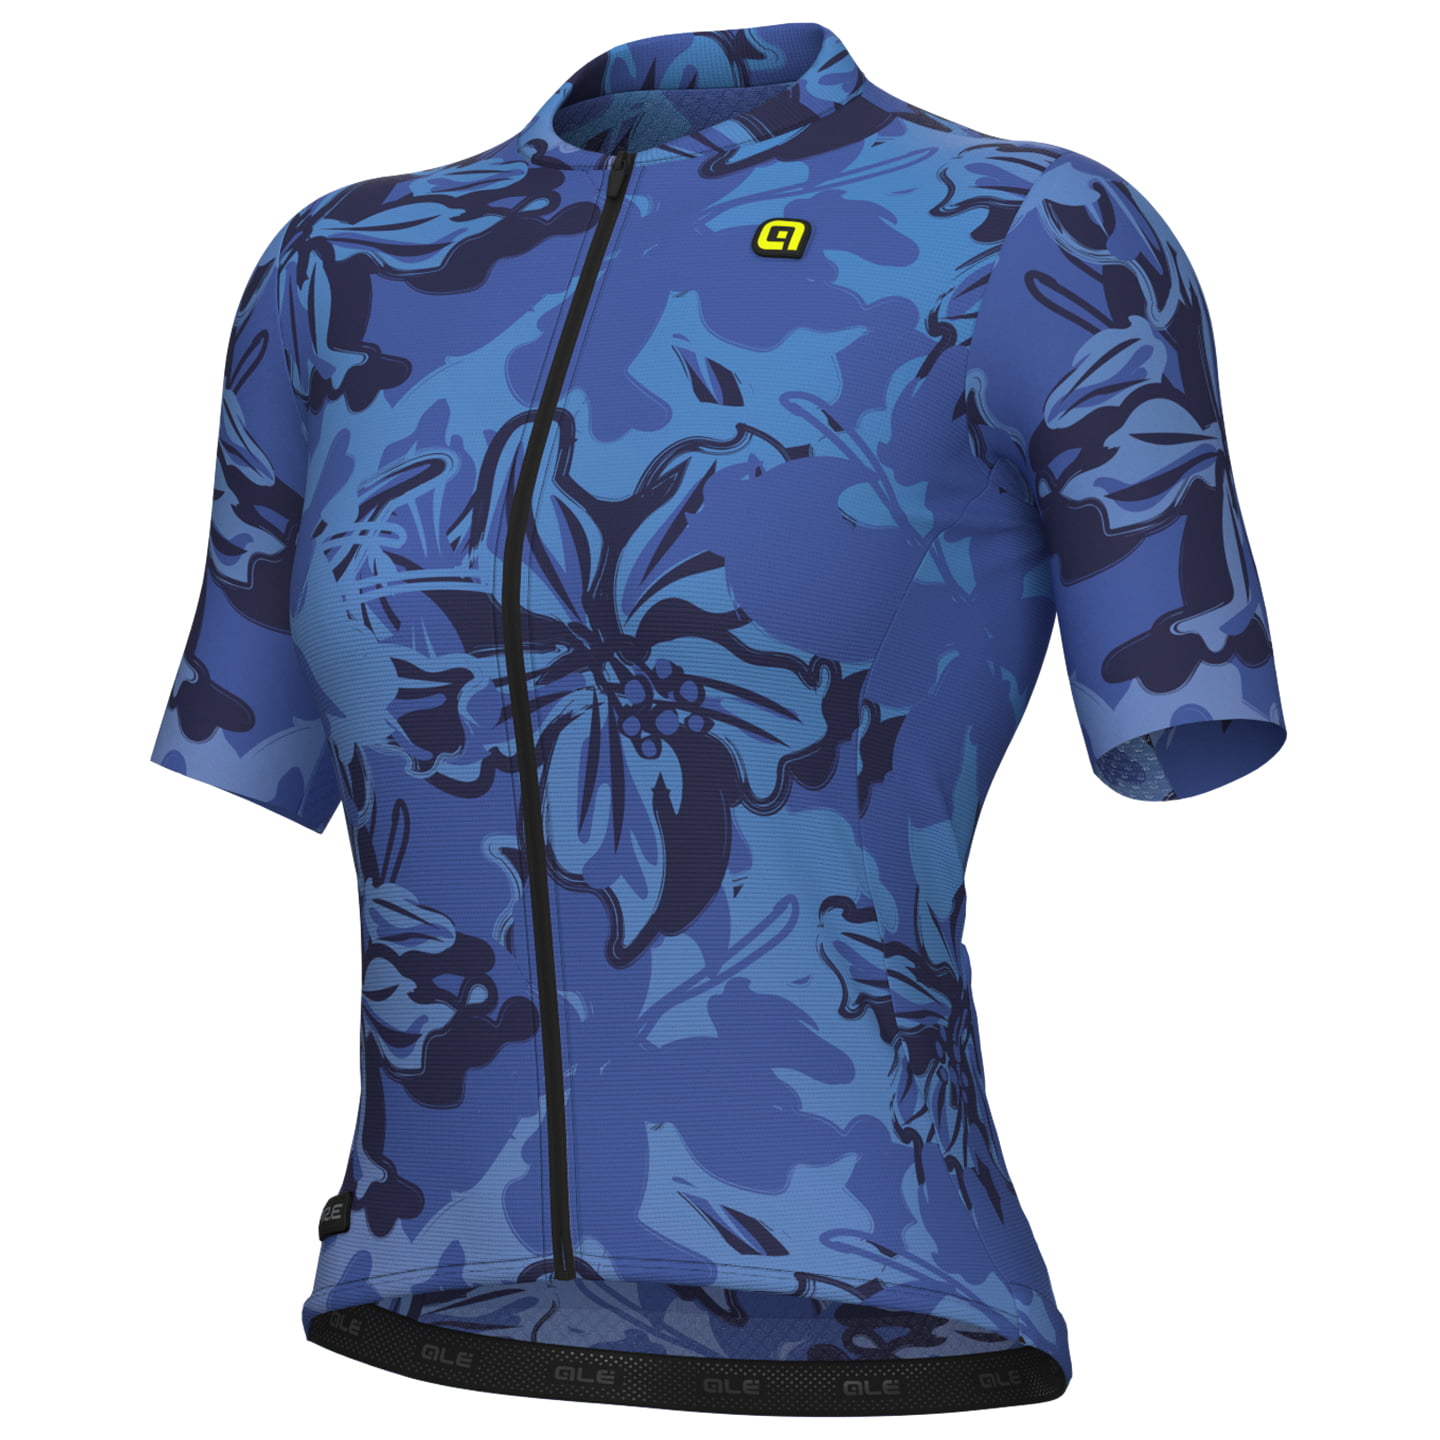 ALE Women Short Sleeve Jersey Honolulu Women’s Short Sleeve Jersey, size XL, Cycle jersey, Bike gear